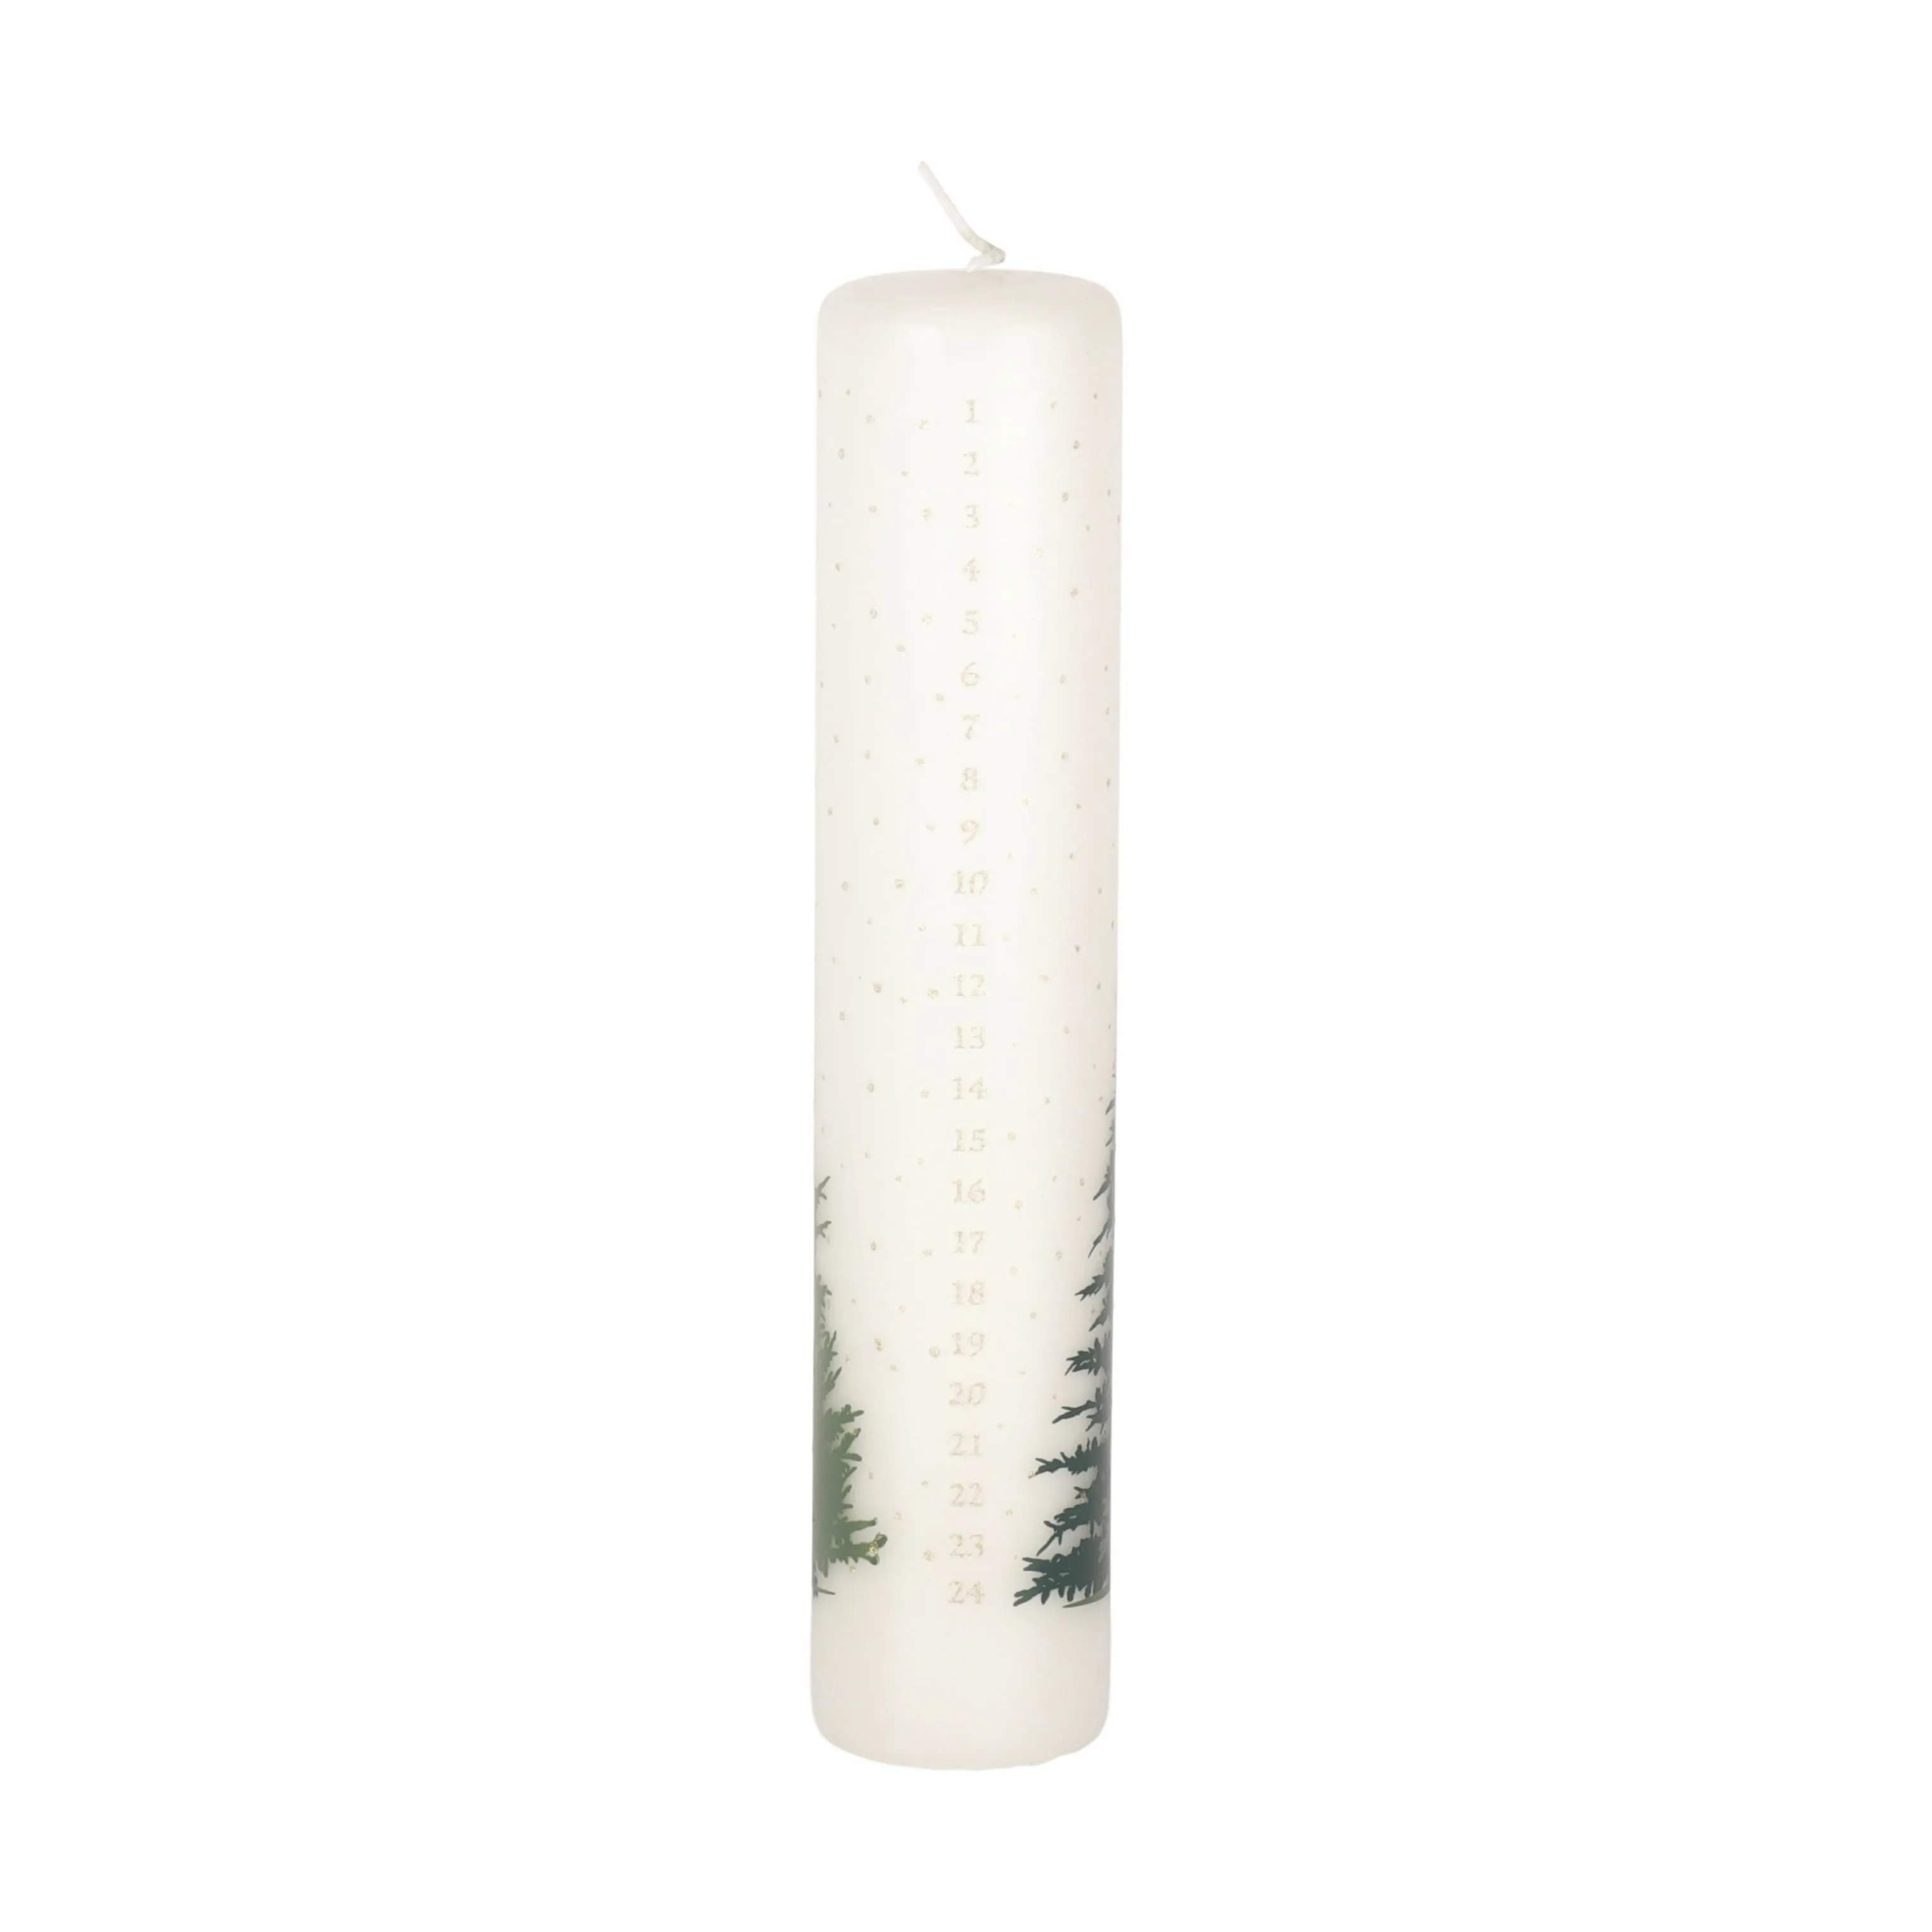 Kalenderlys - Juletræer, hvid/grøn, large